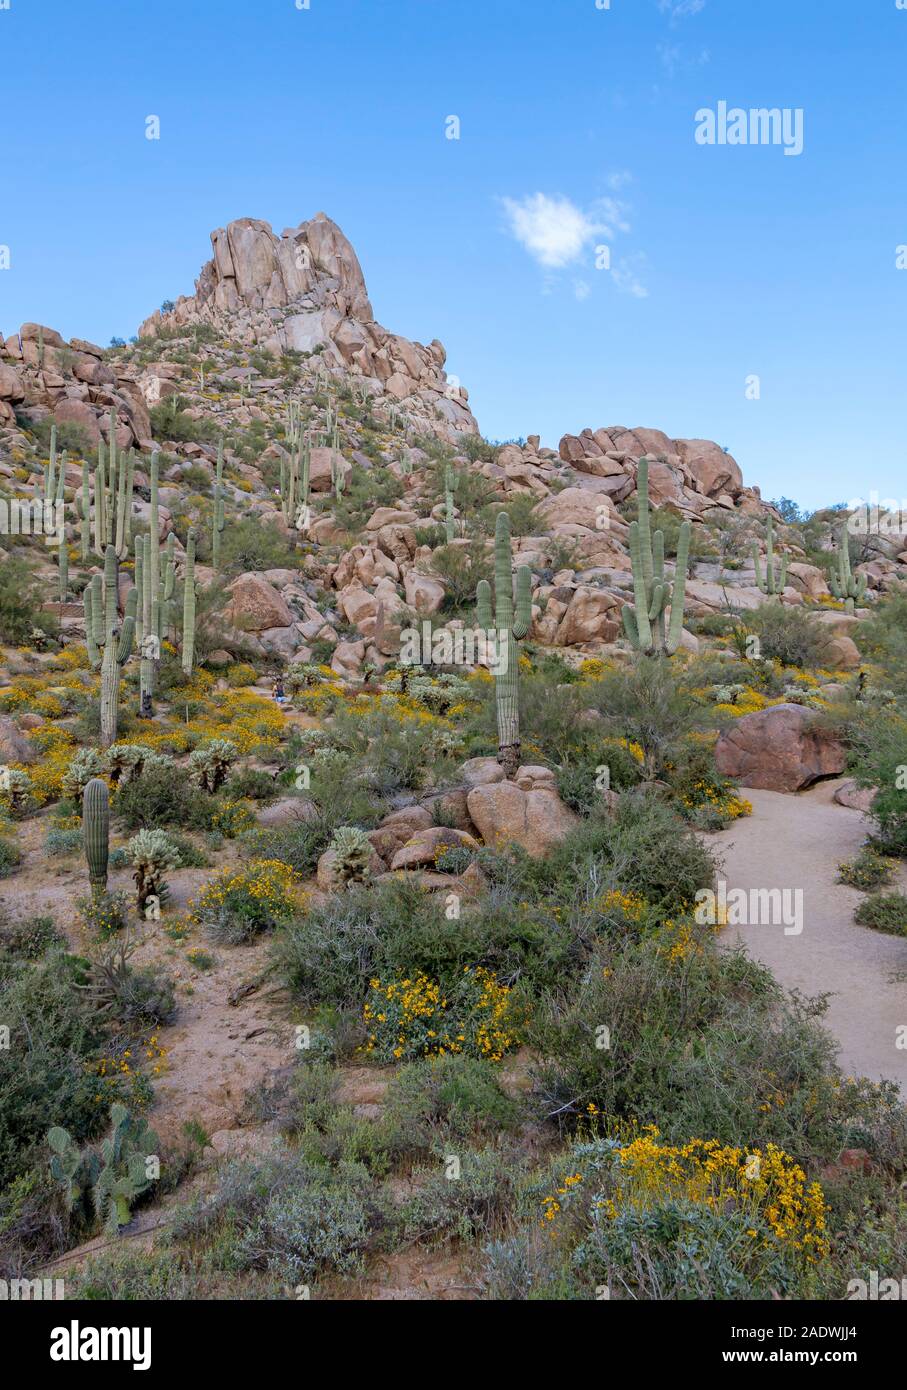 Picco Pinnacolo sentiero escursionistico in Scottsdale Arizona durante la stagione primaverile con fiori selvaggi e cactus. Foto Stock